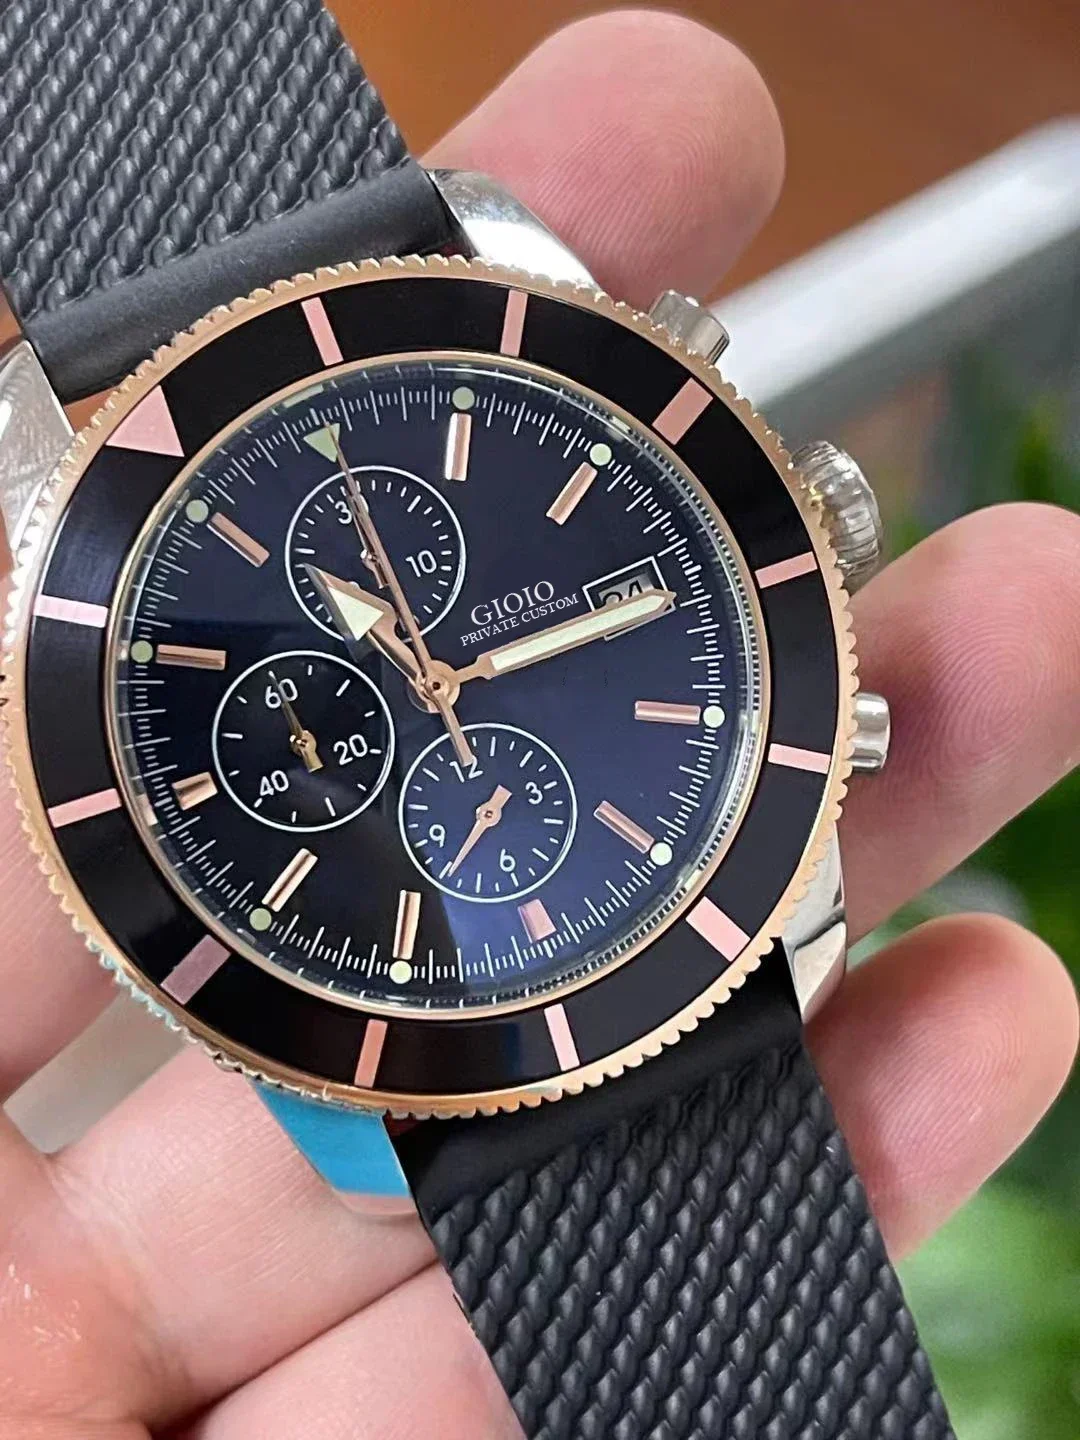 

Роскошные новые черные и синие резиновые часы SuperOcean мужские керамические кварцевые часы цвета розового золота с хронографом